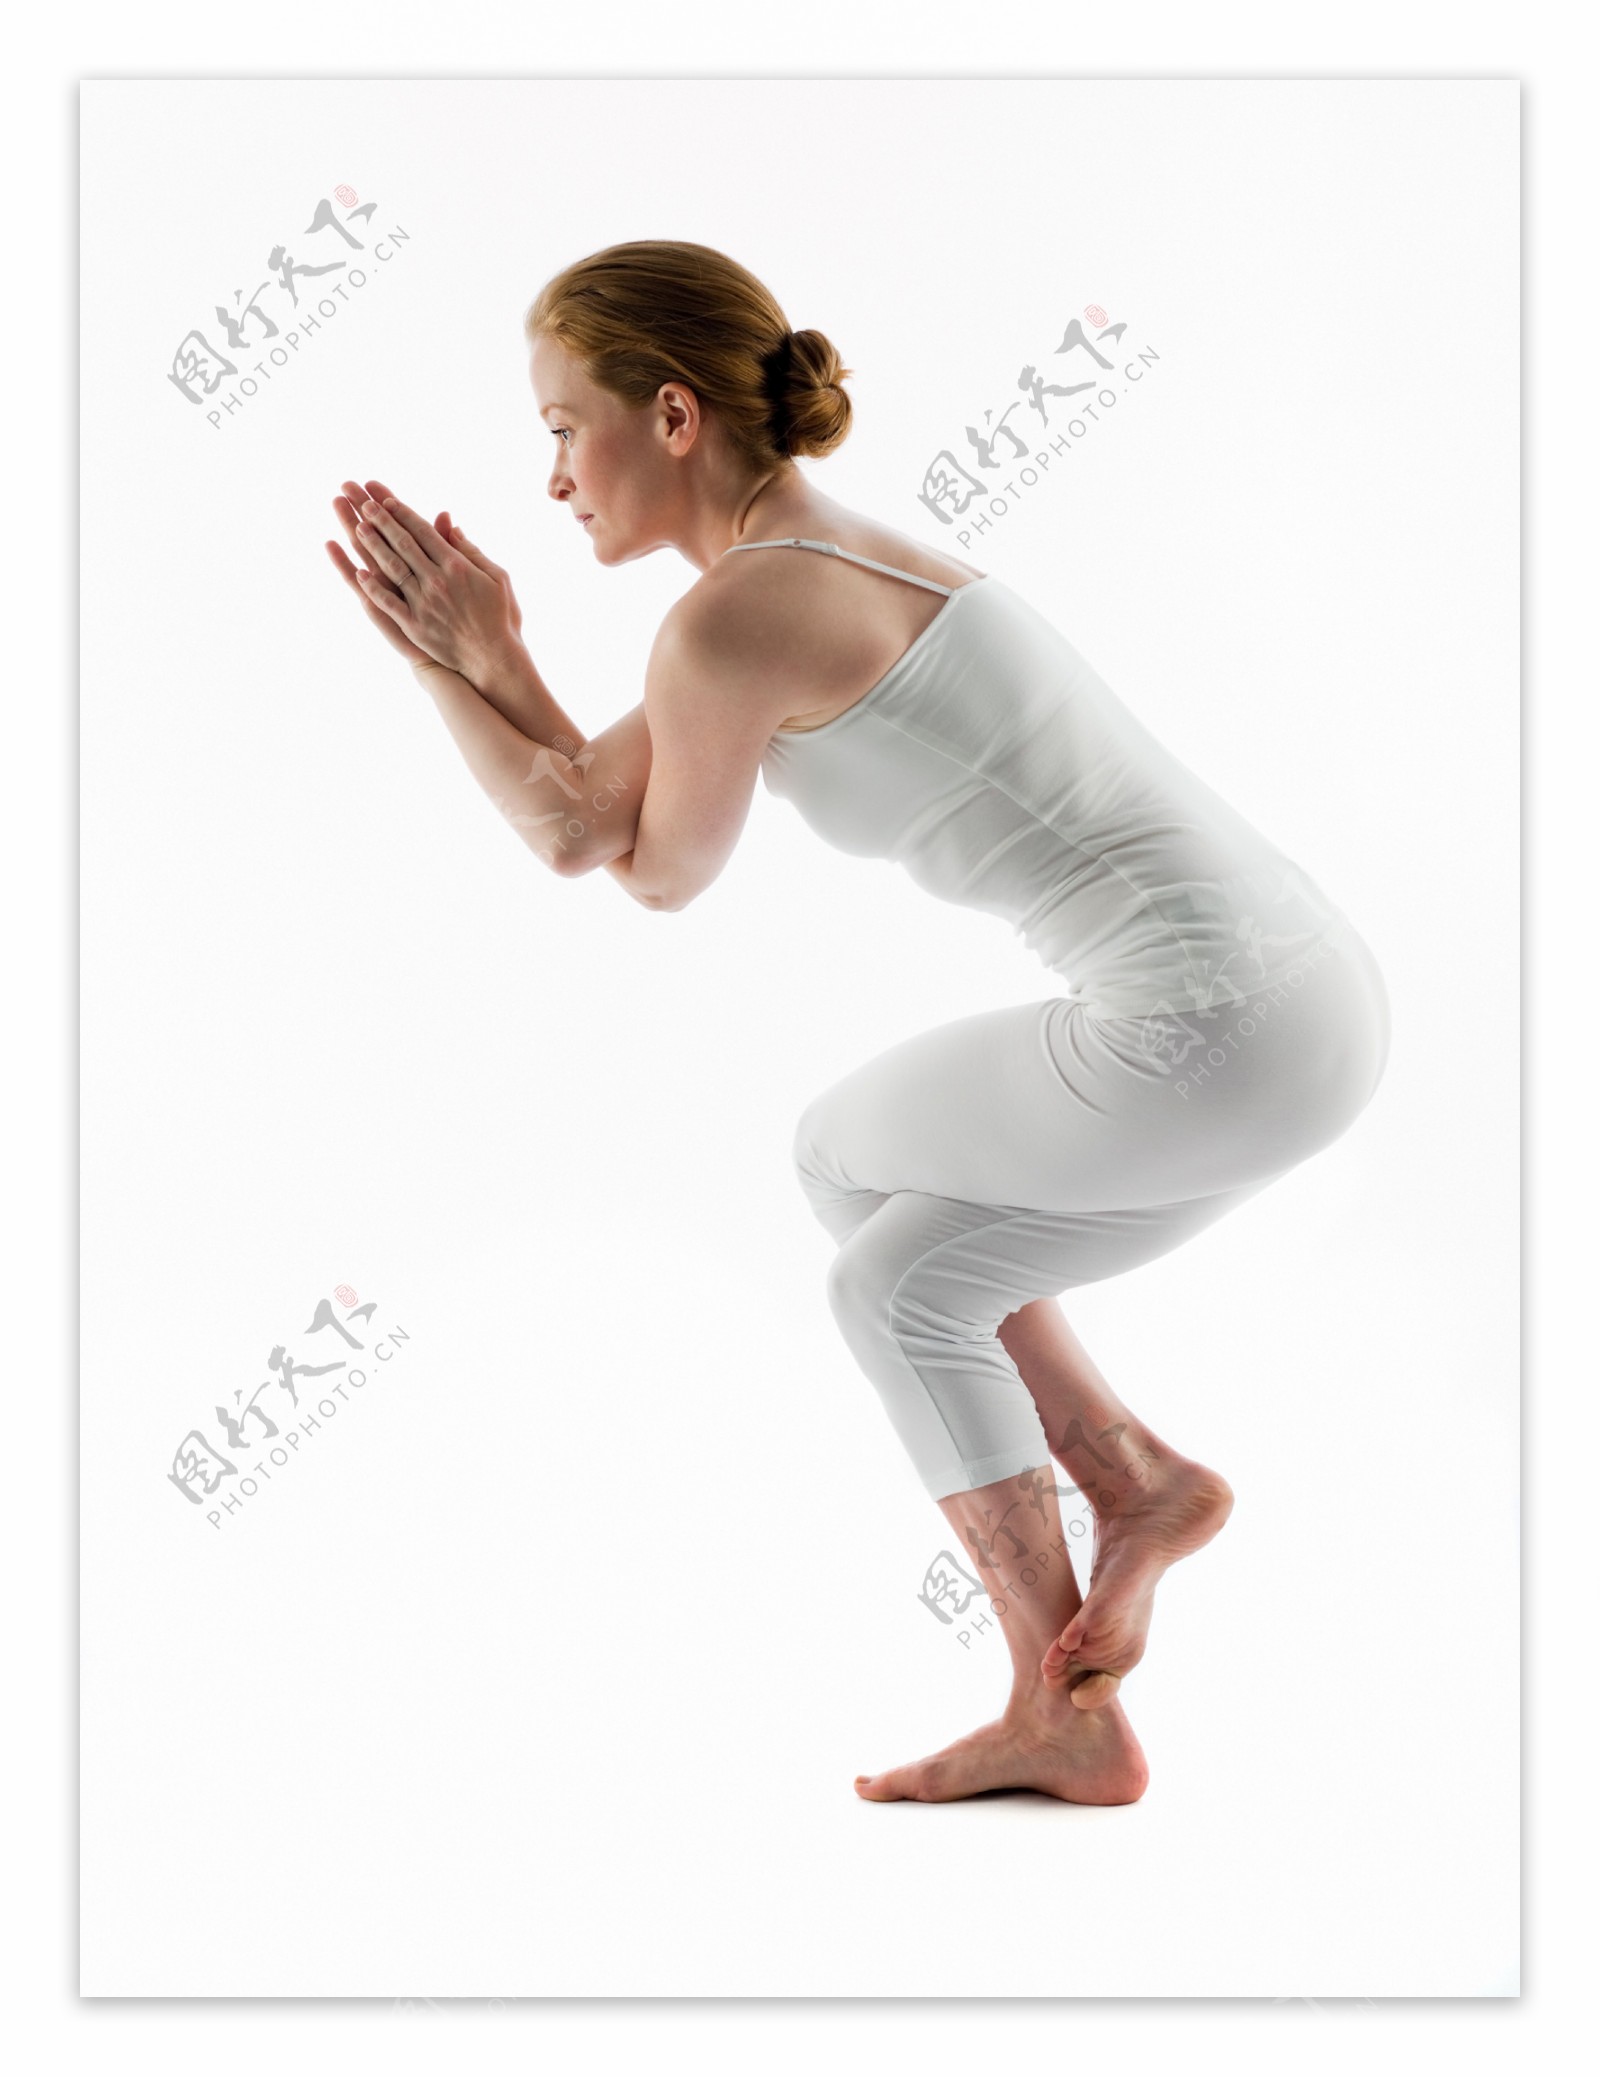 女性瑜伽养生保健操图片